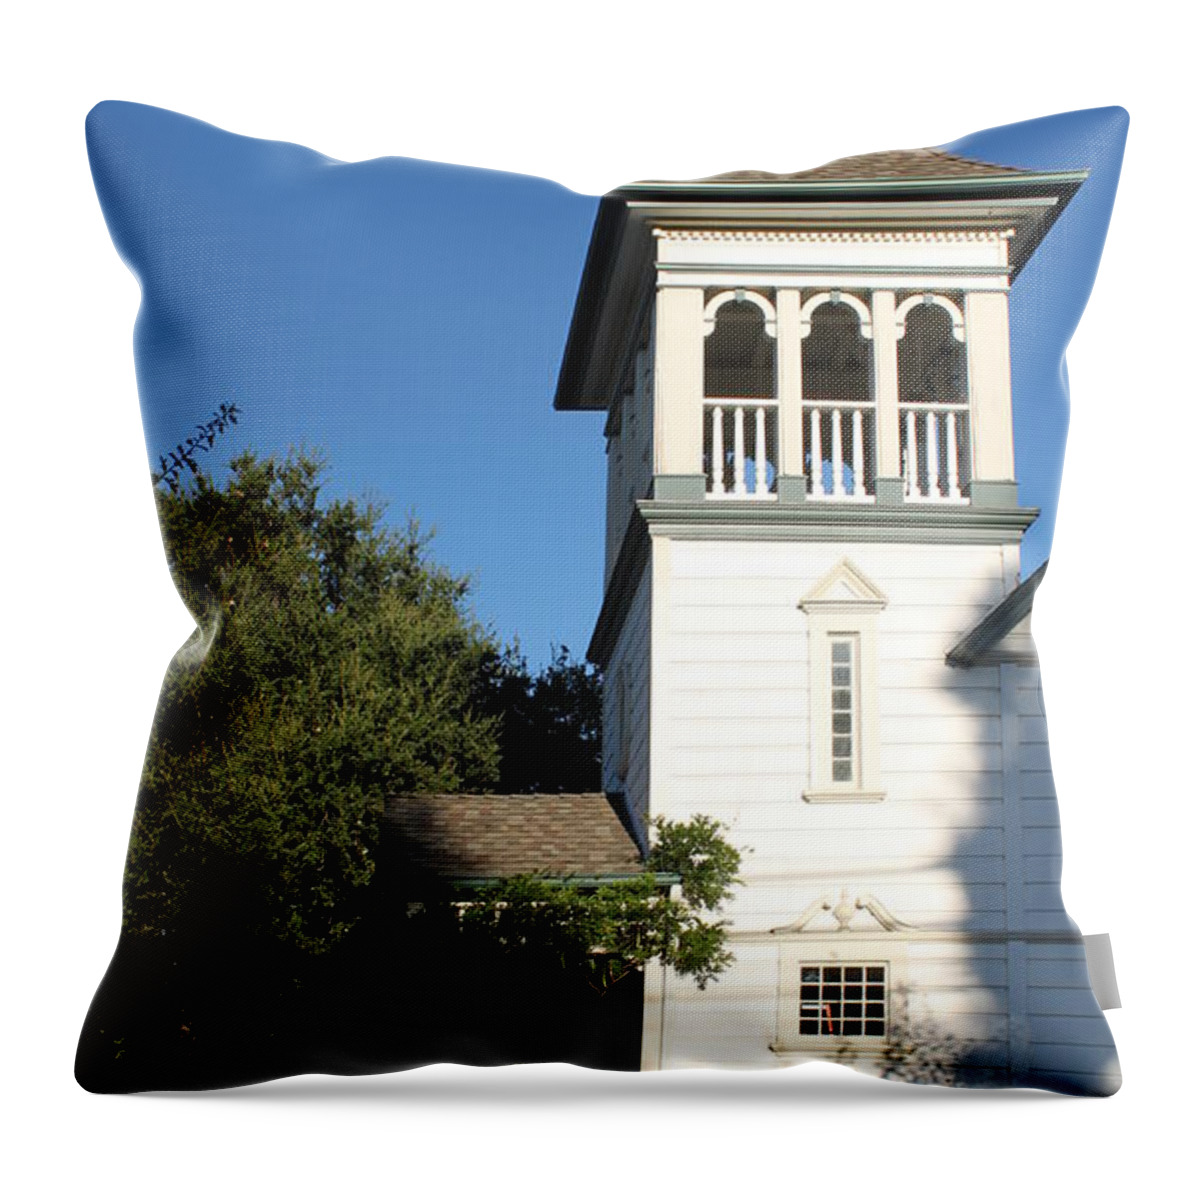 Ojai Throw Pillow featuring the photograph Nazarene Church by Henrik Lehnerer